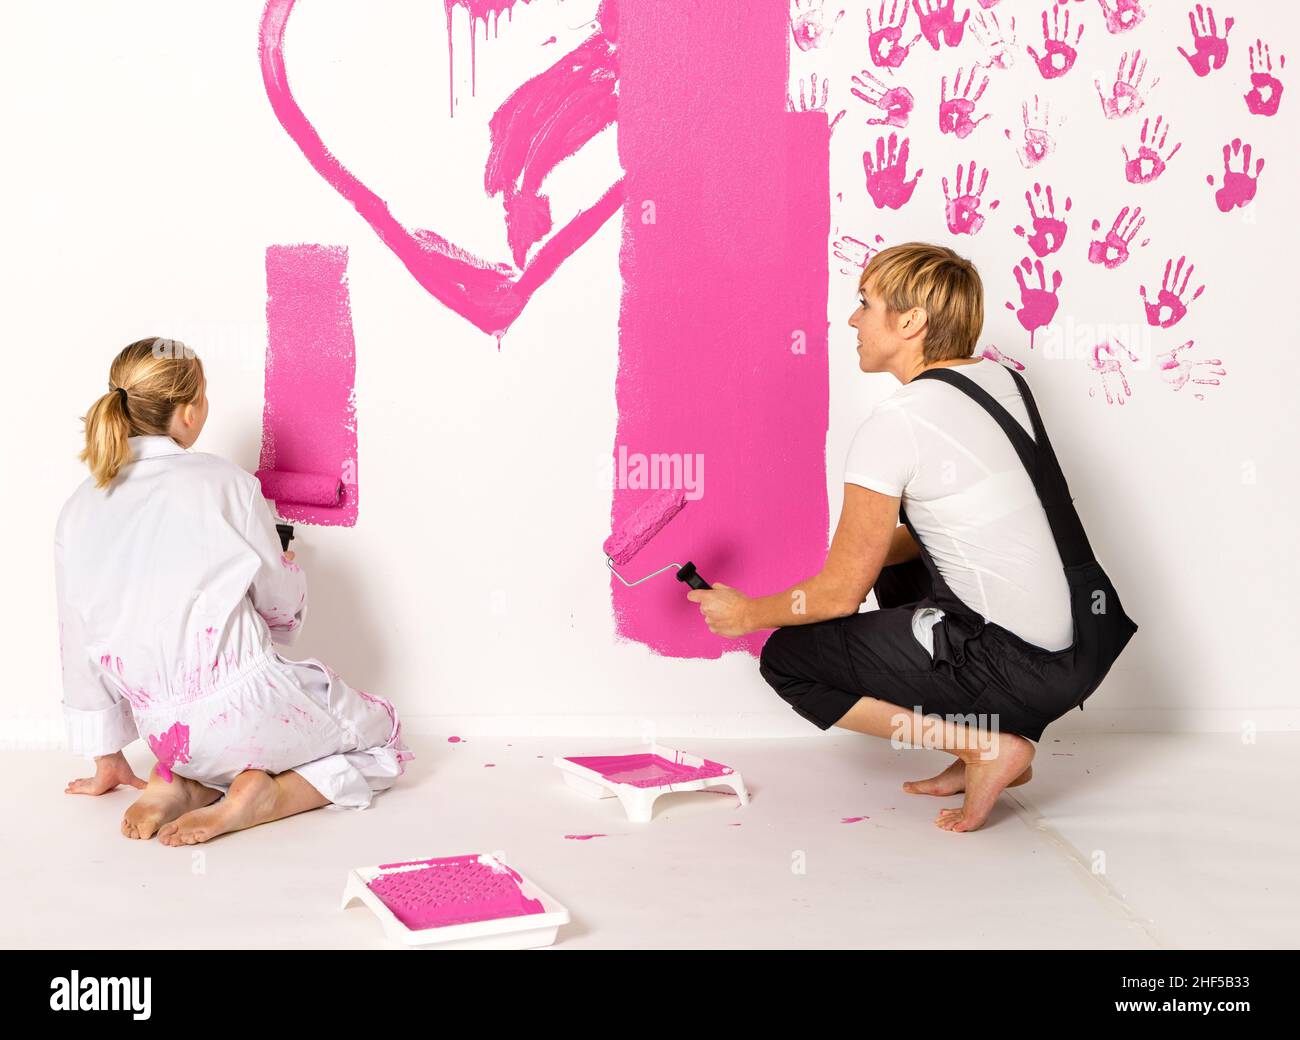 Mère et fille peint avec de la peinture rose sur un mur blanc.Les deux sont assis. Banque D'Images